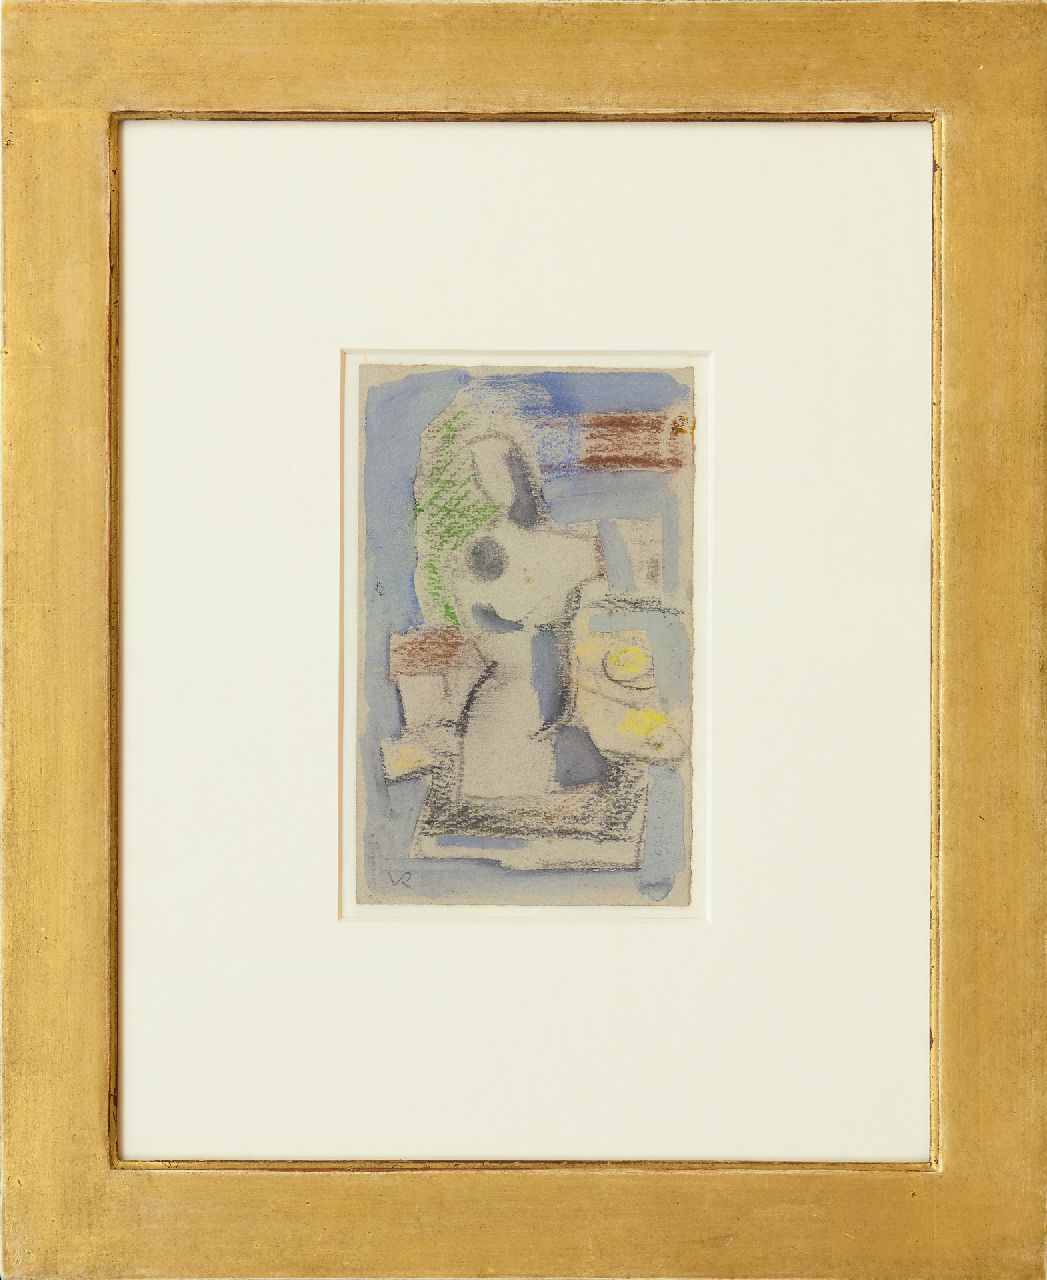 Rees O. van | Otto van Rees | Aquarellen en tekeningen te koop aangeboden | Compositie met torso, krijt en aquarel op papier 17,5 x 11,5 cm, te dateren ca. 1949